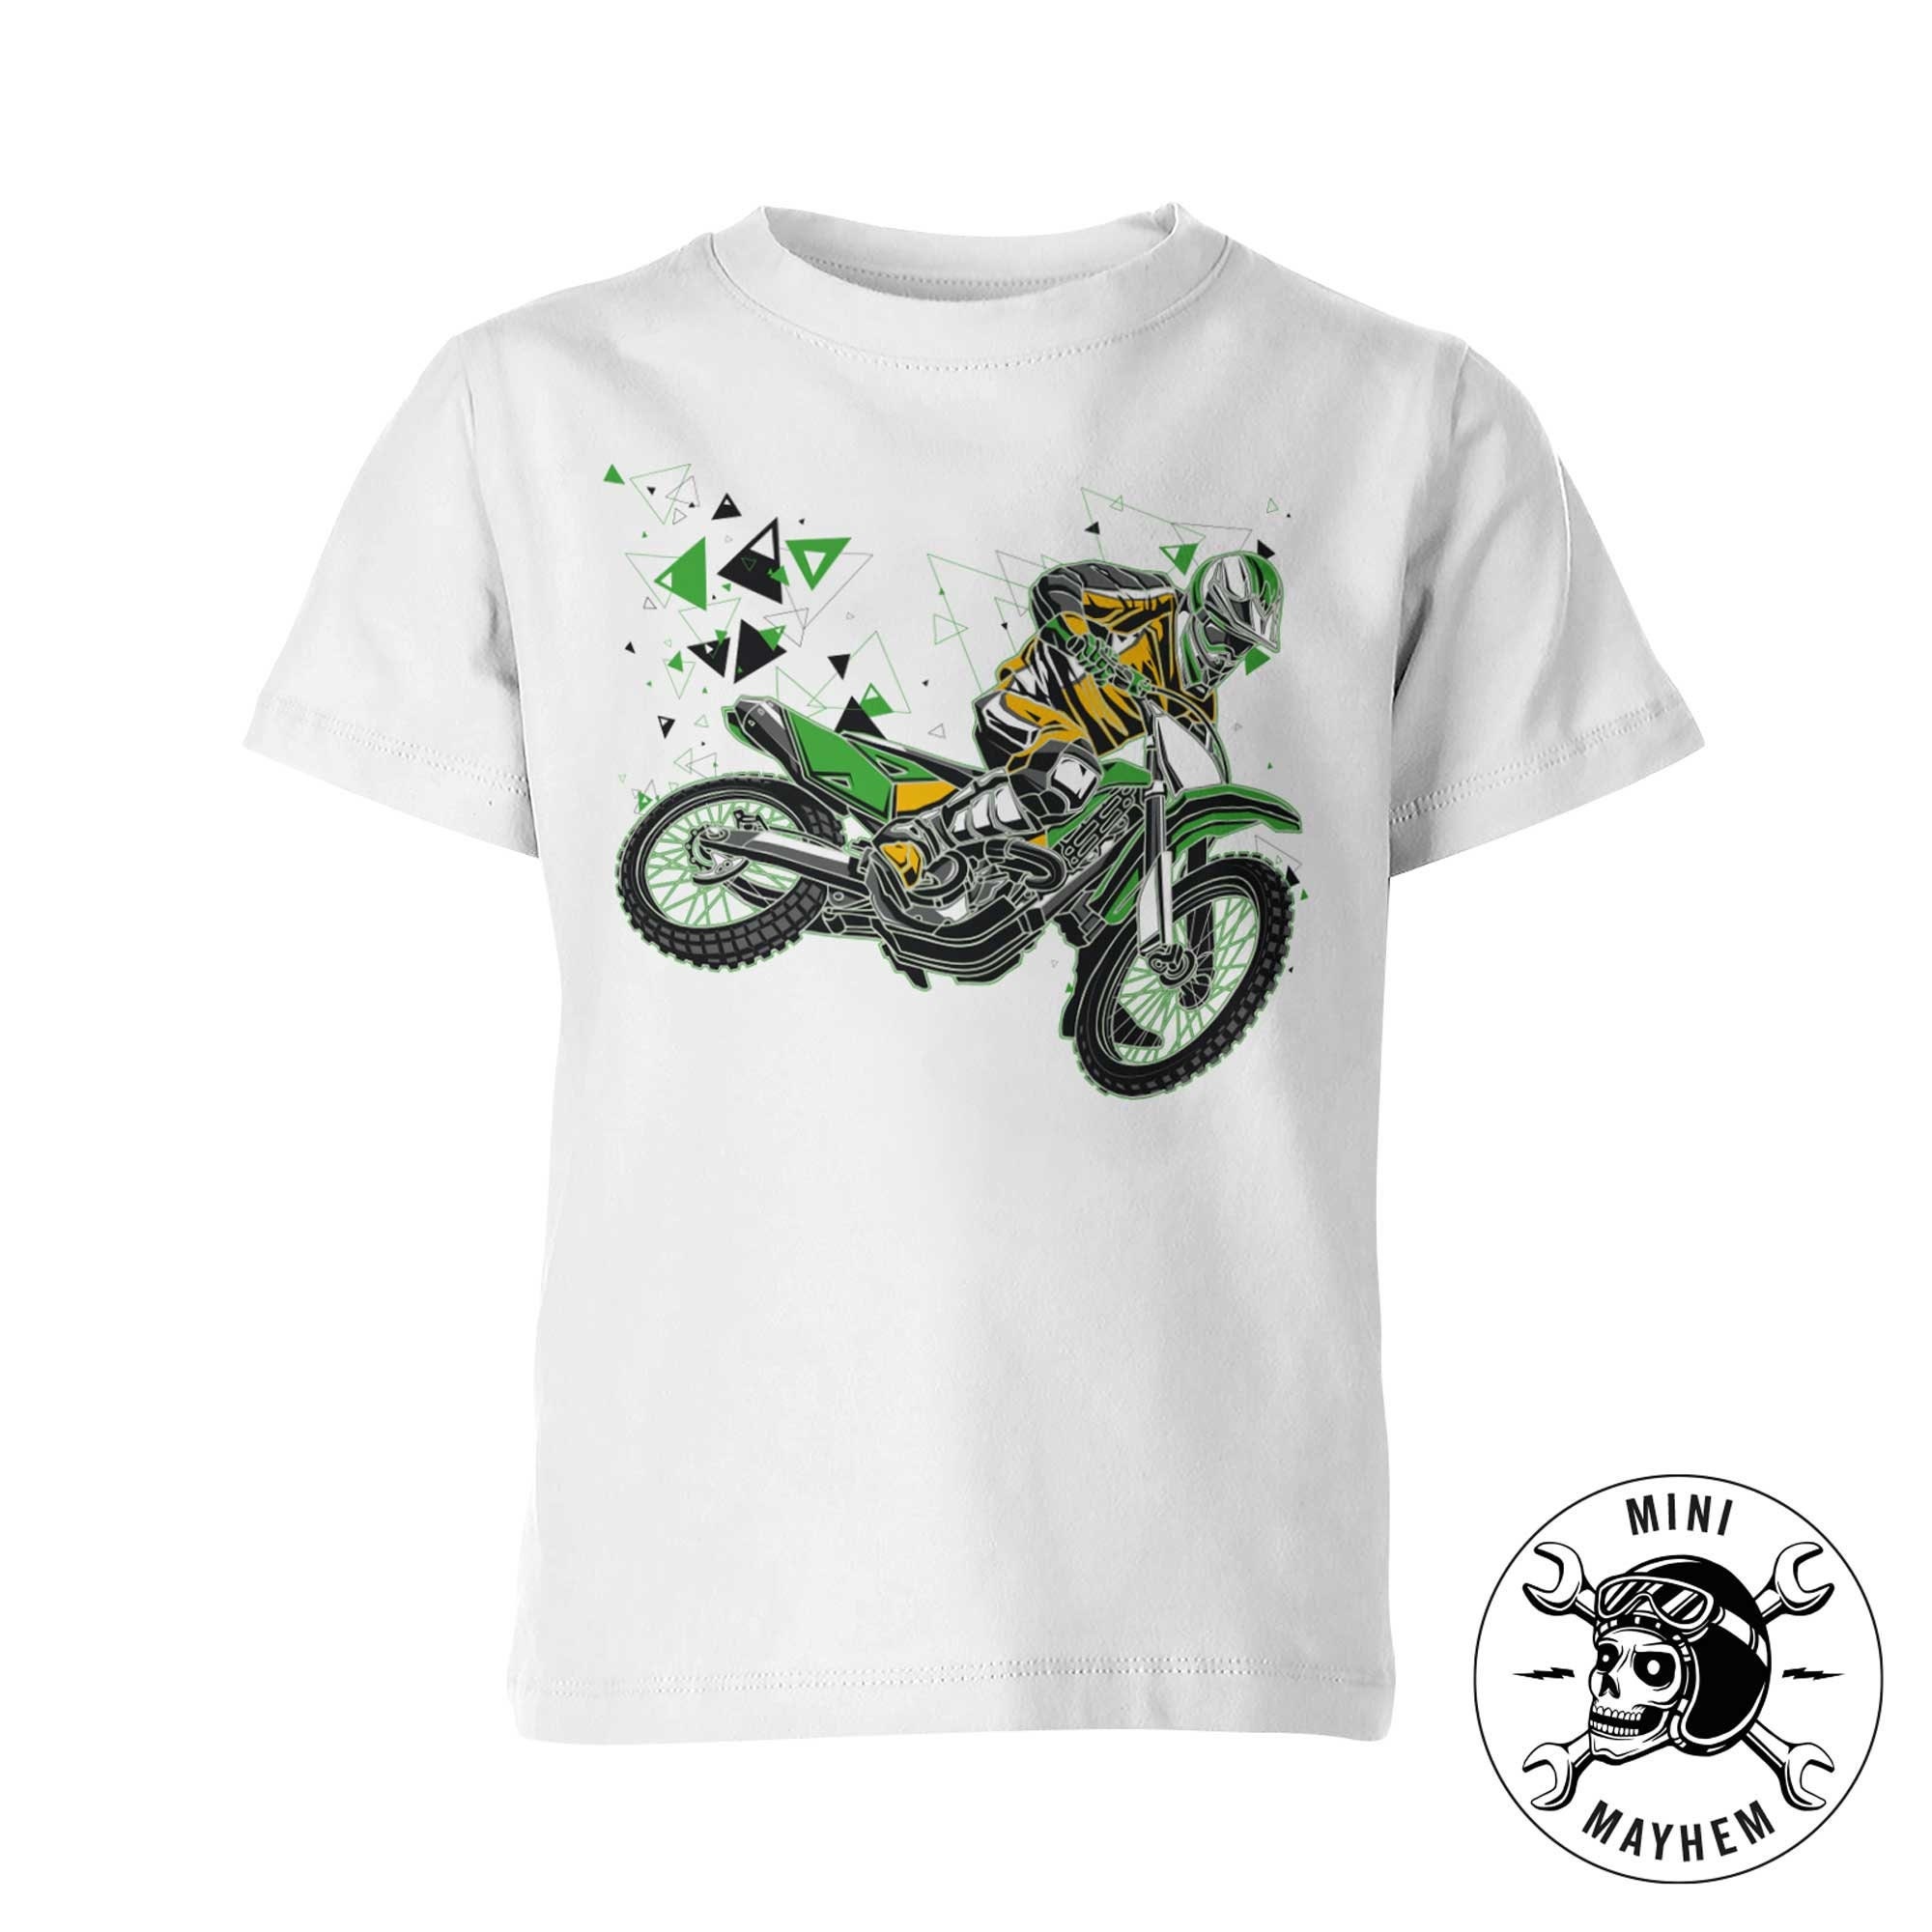 Tee-shirts Motocross - Livraison Gratuite